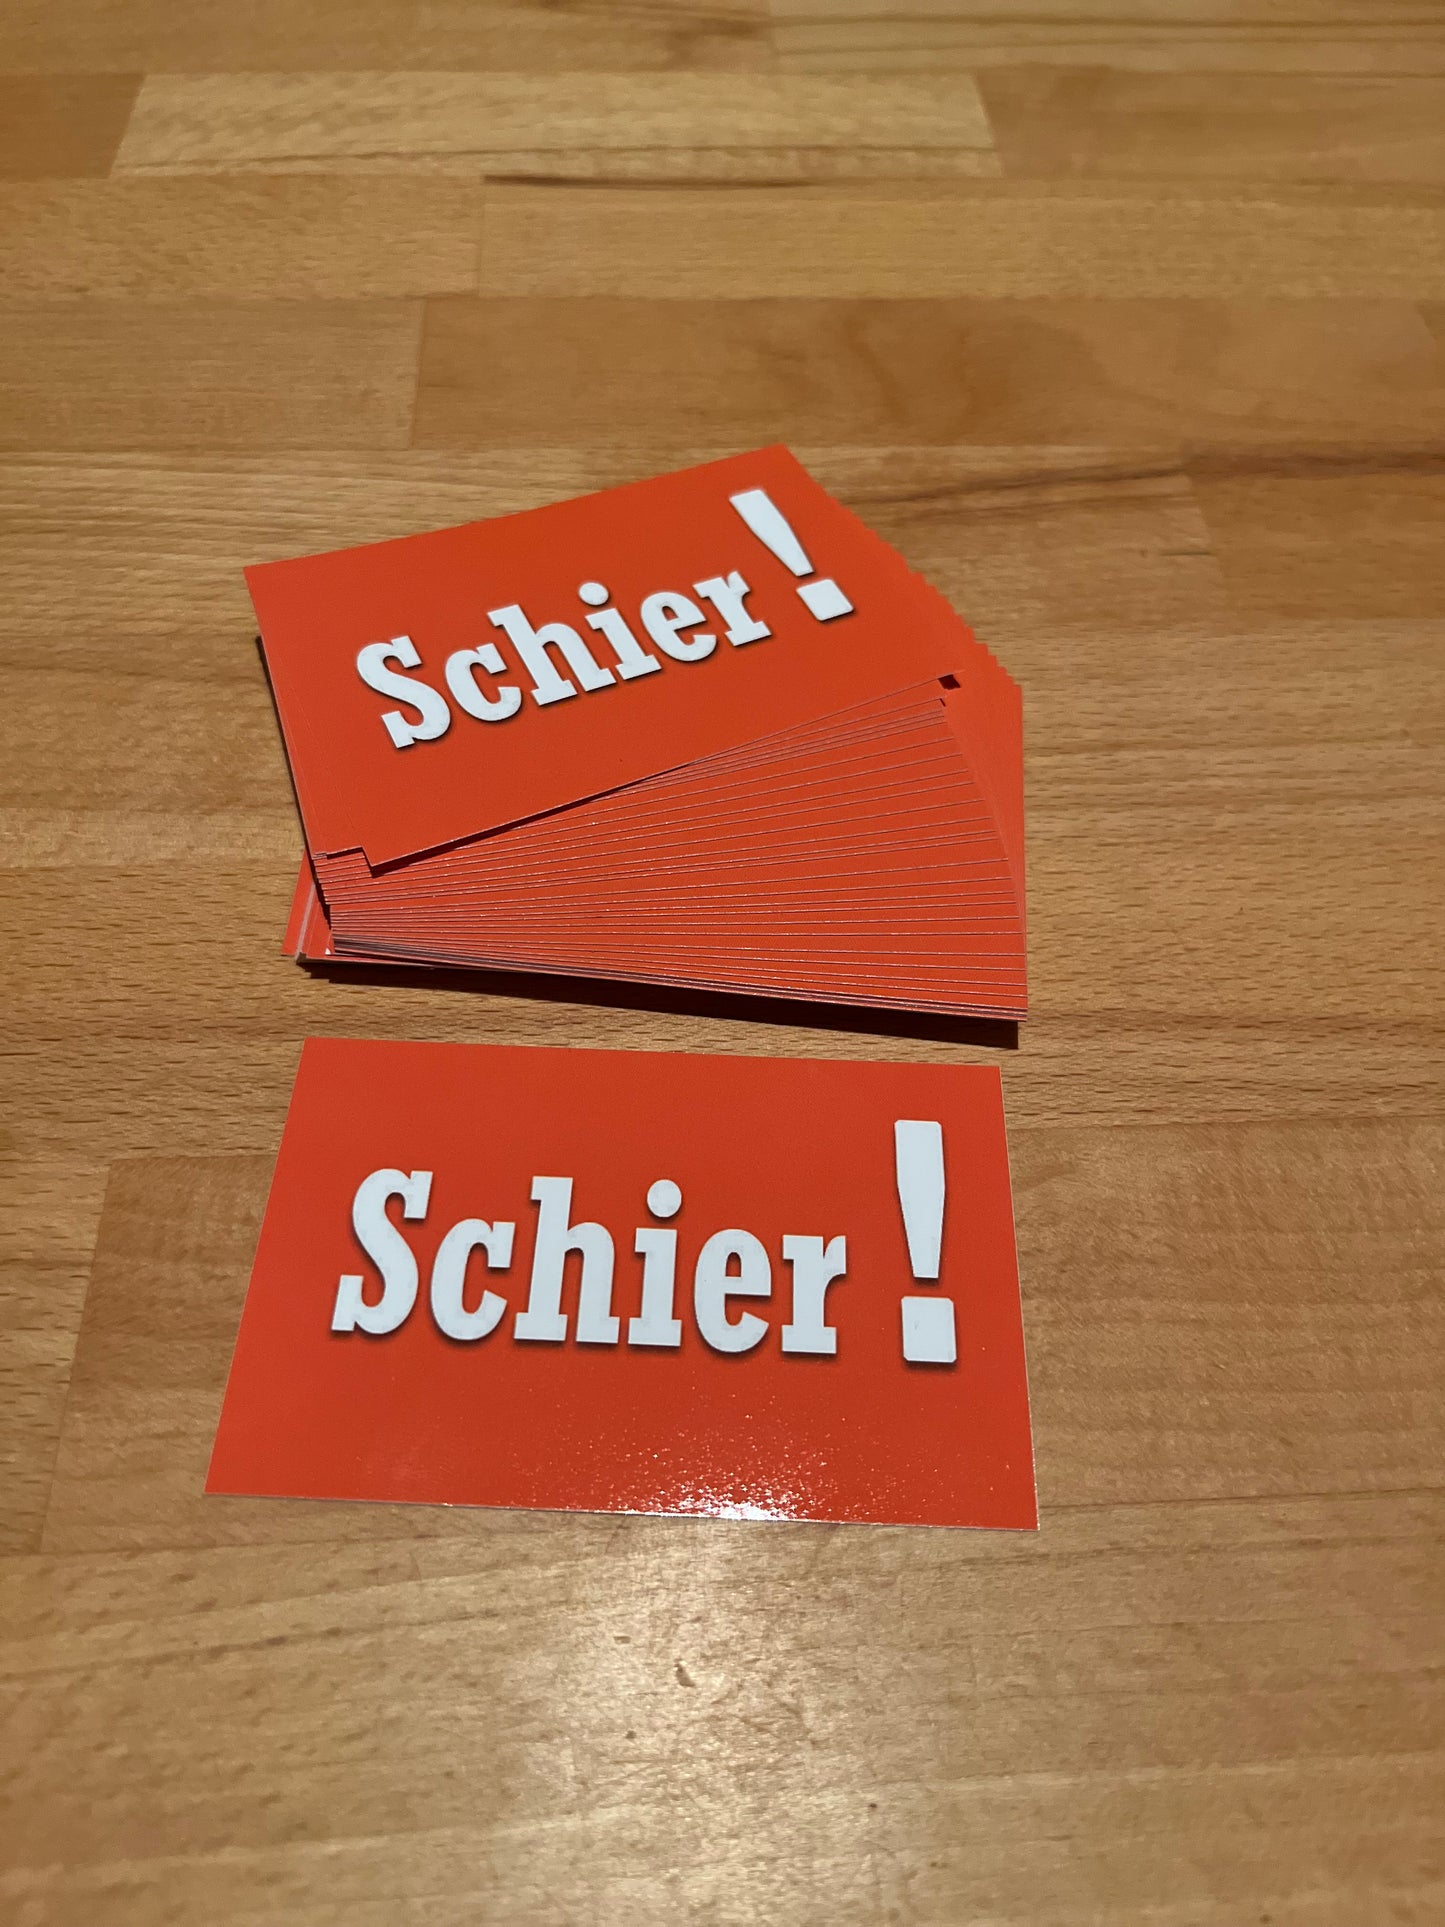 Sticker "Schier !"